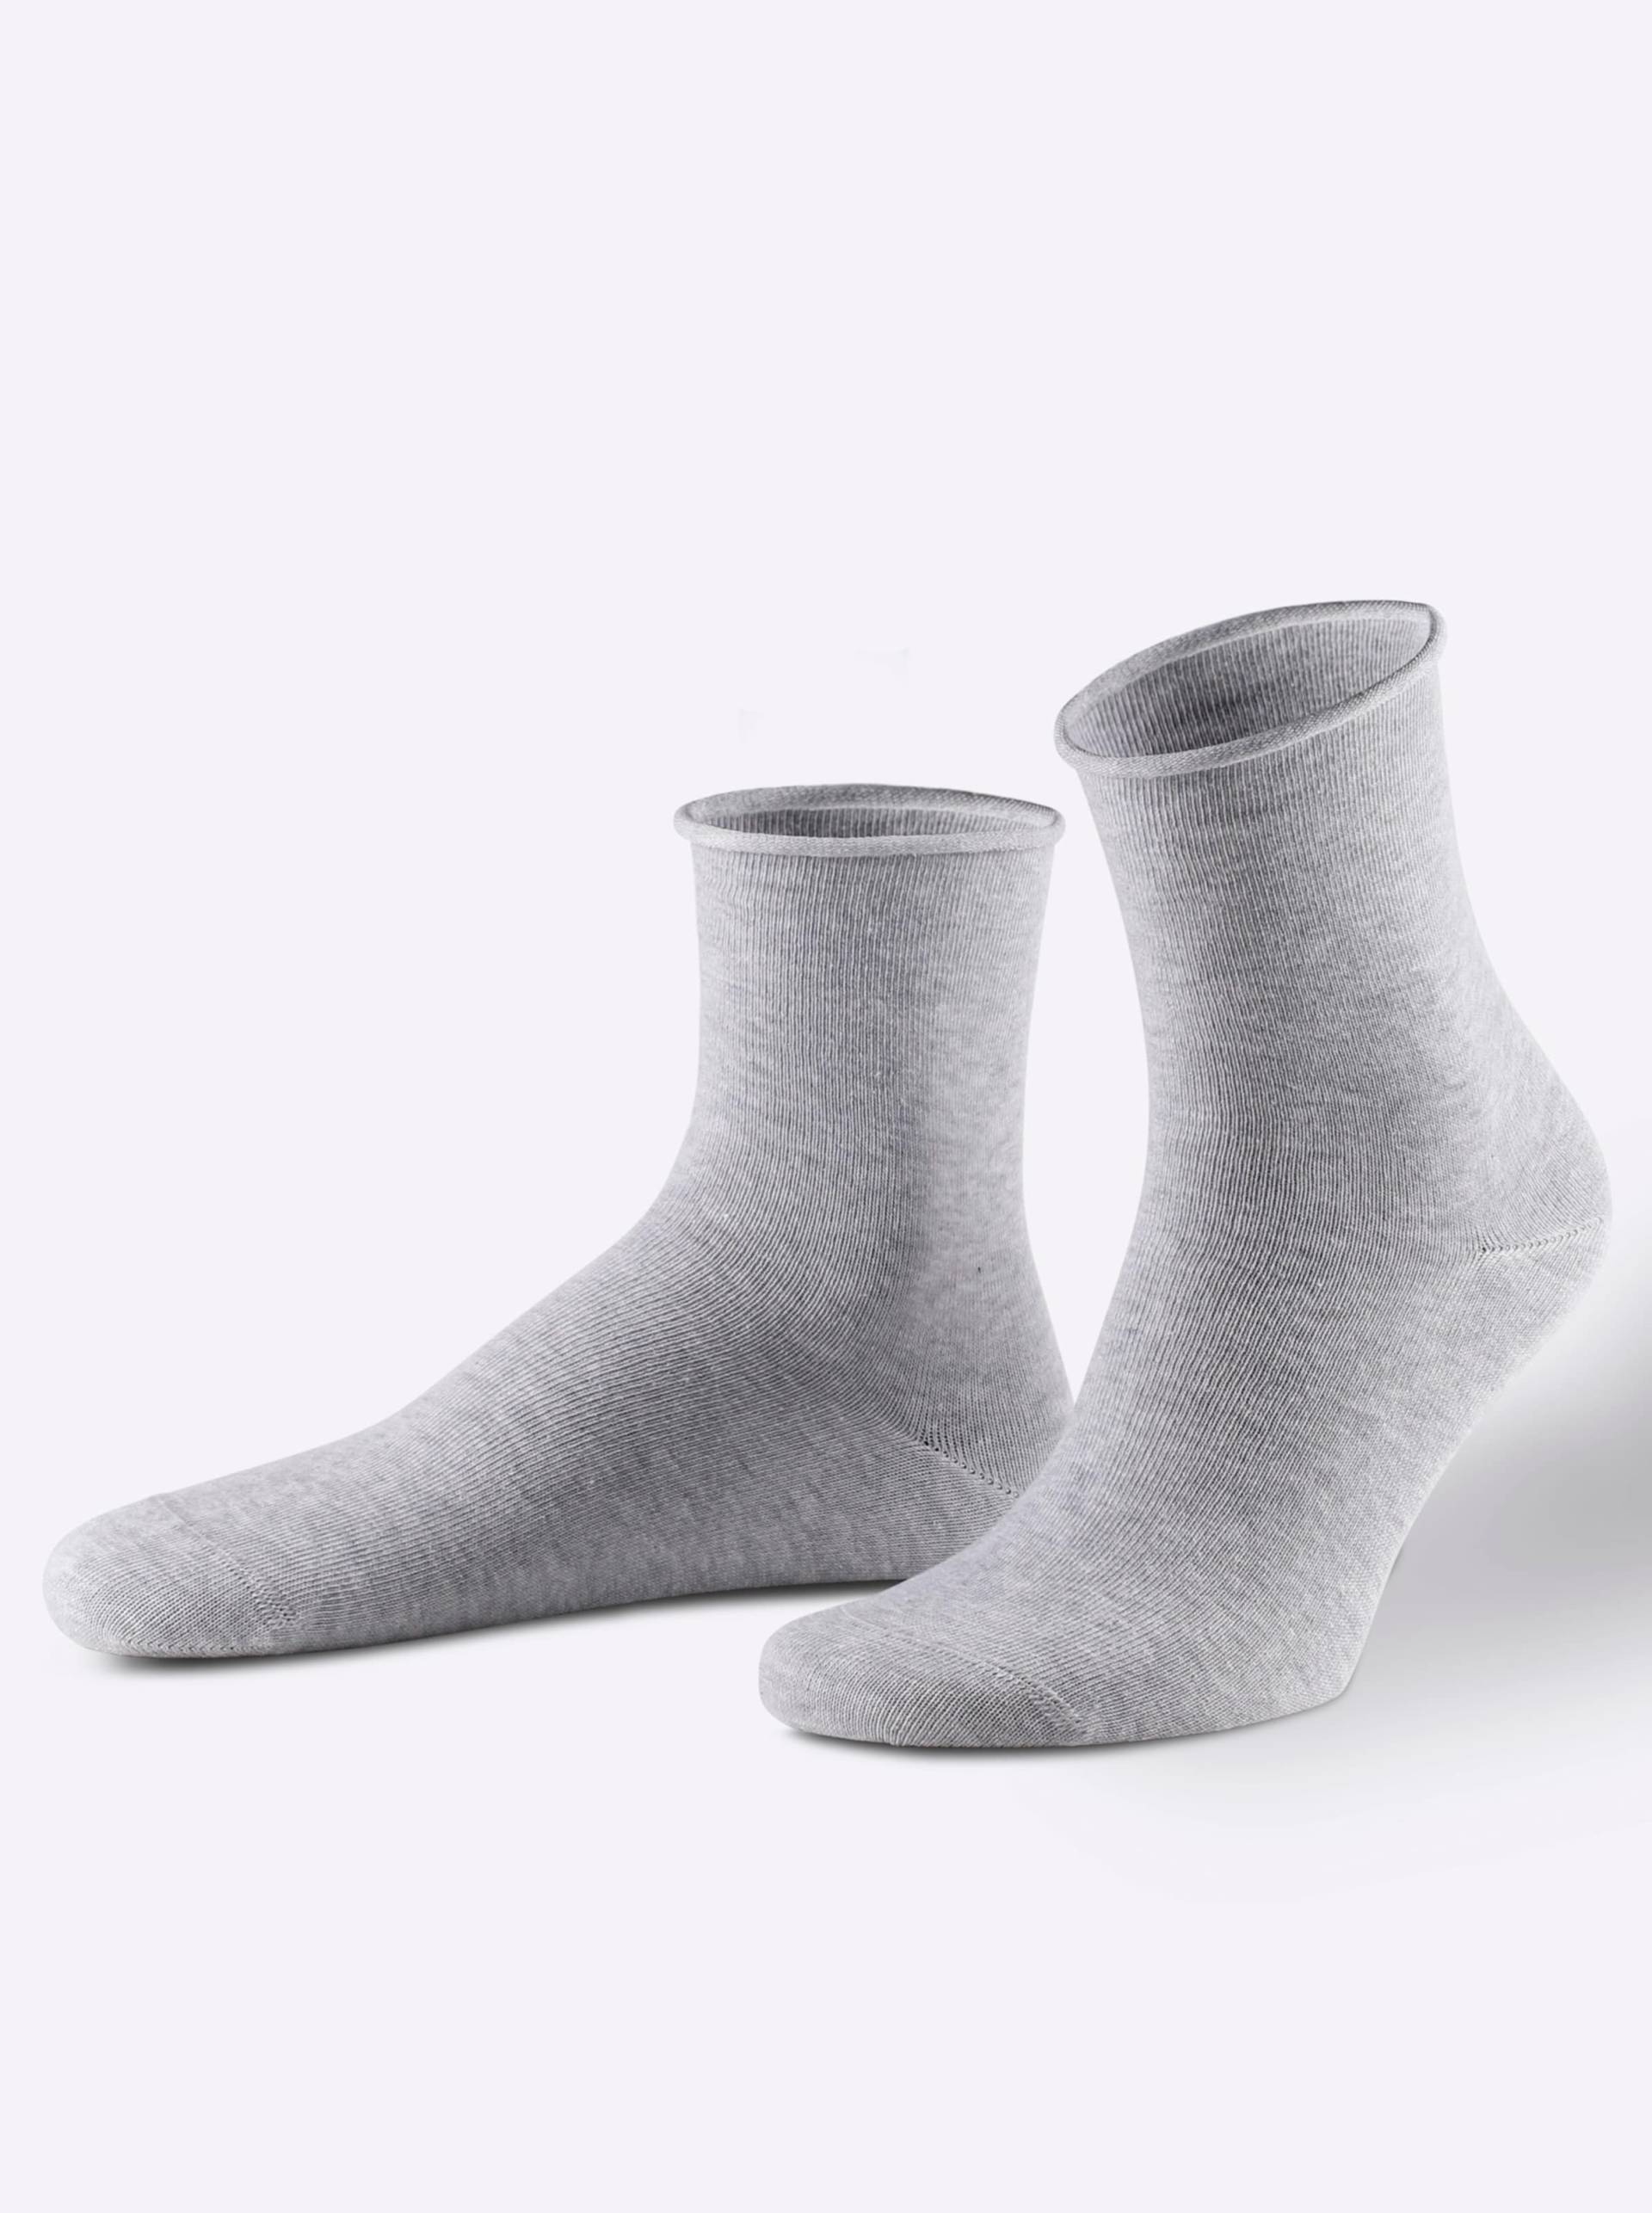 Damen-Socken in grau-gemustert von wäschepur